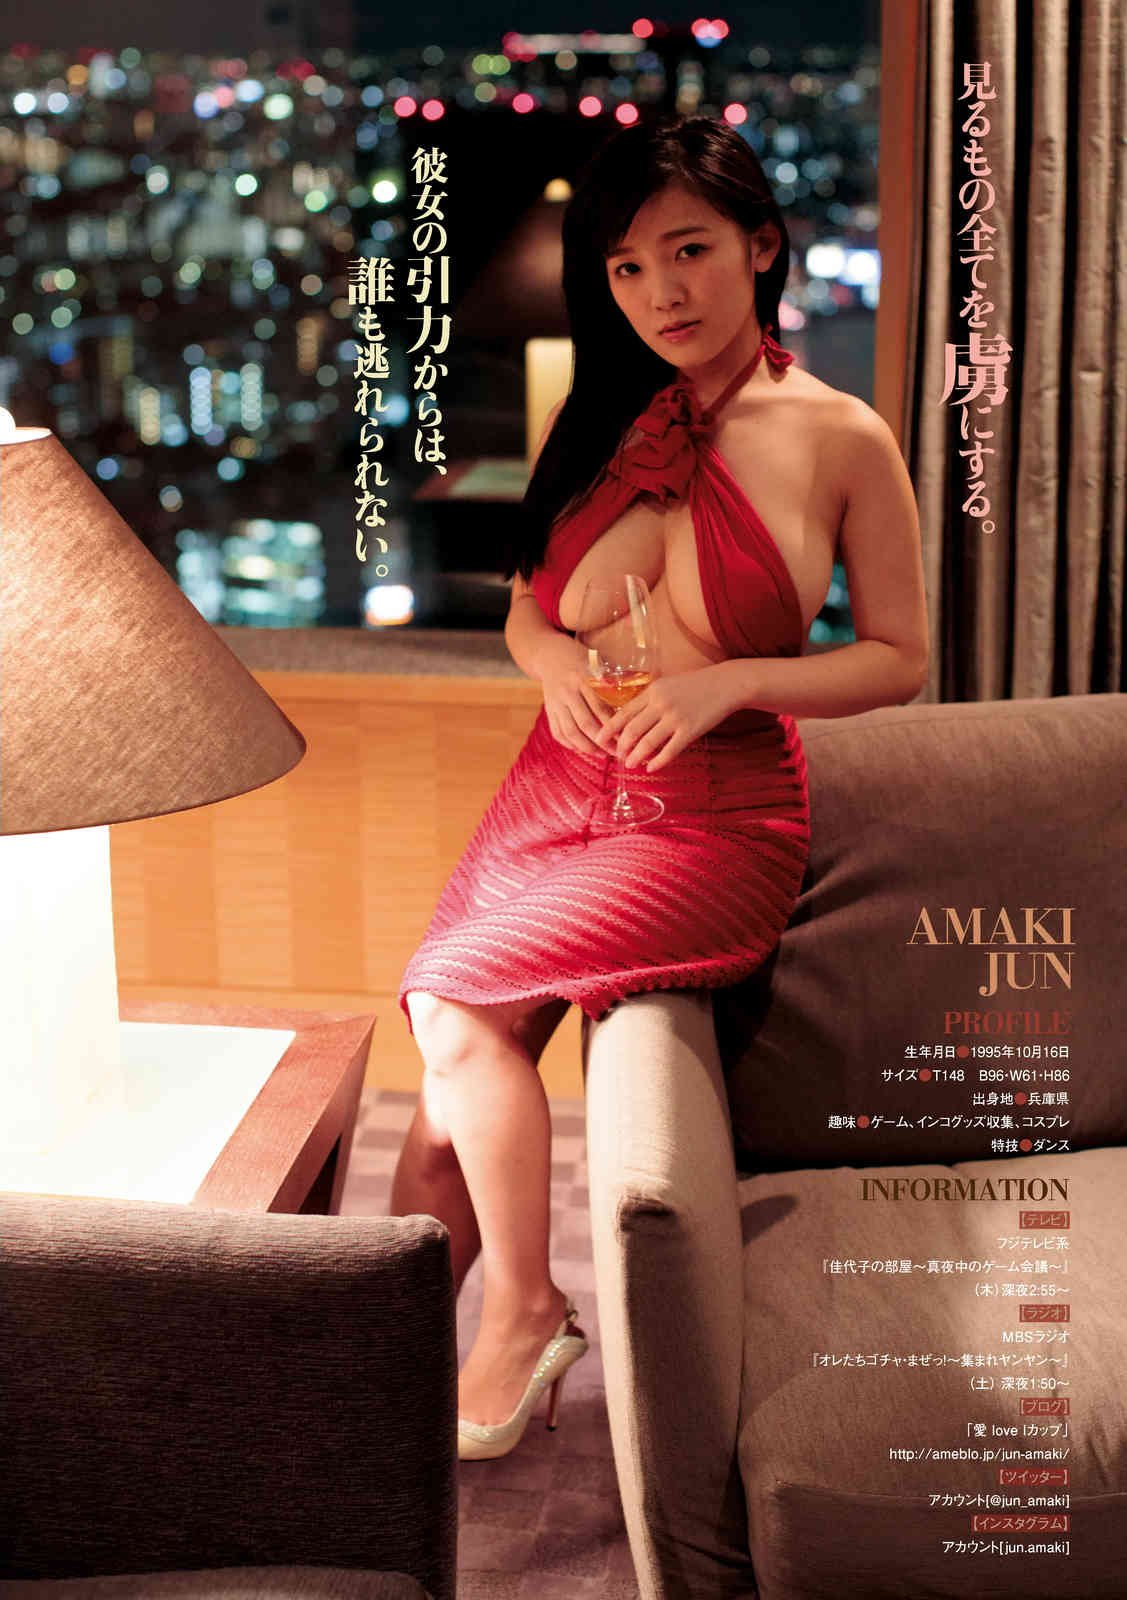 Cute Ayako Kuroda and Jun Amaki Bikini Photos